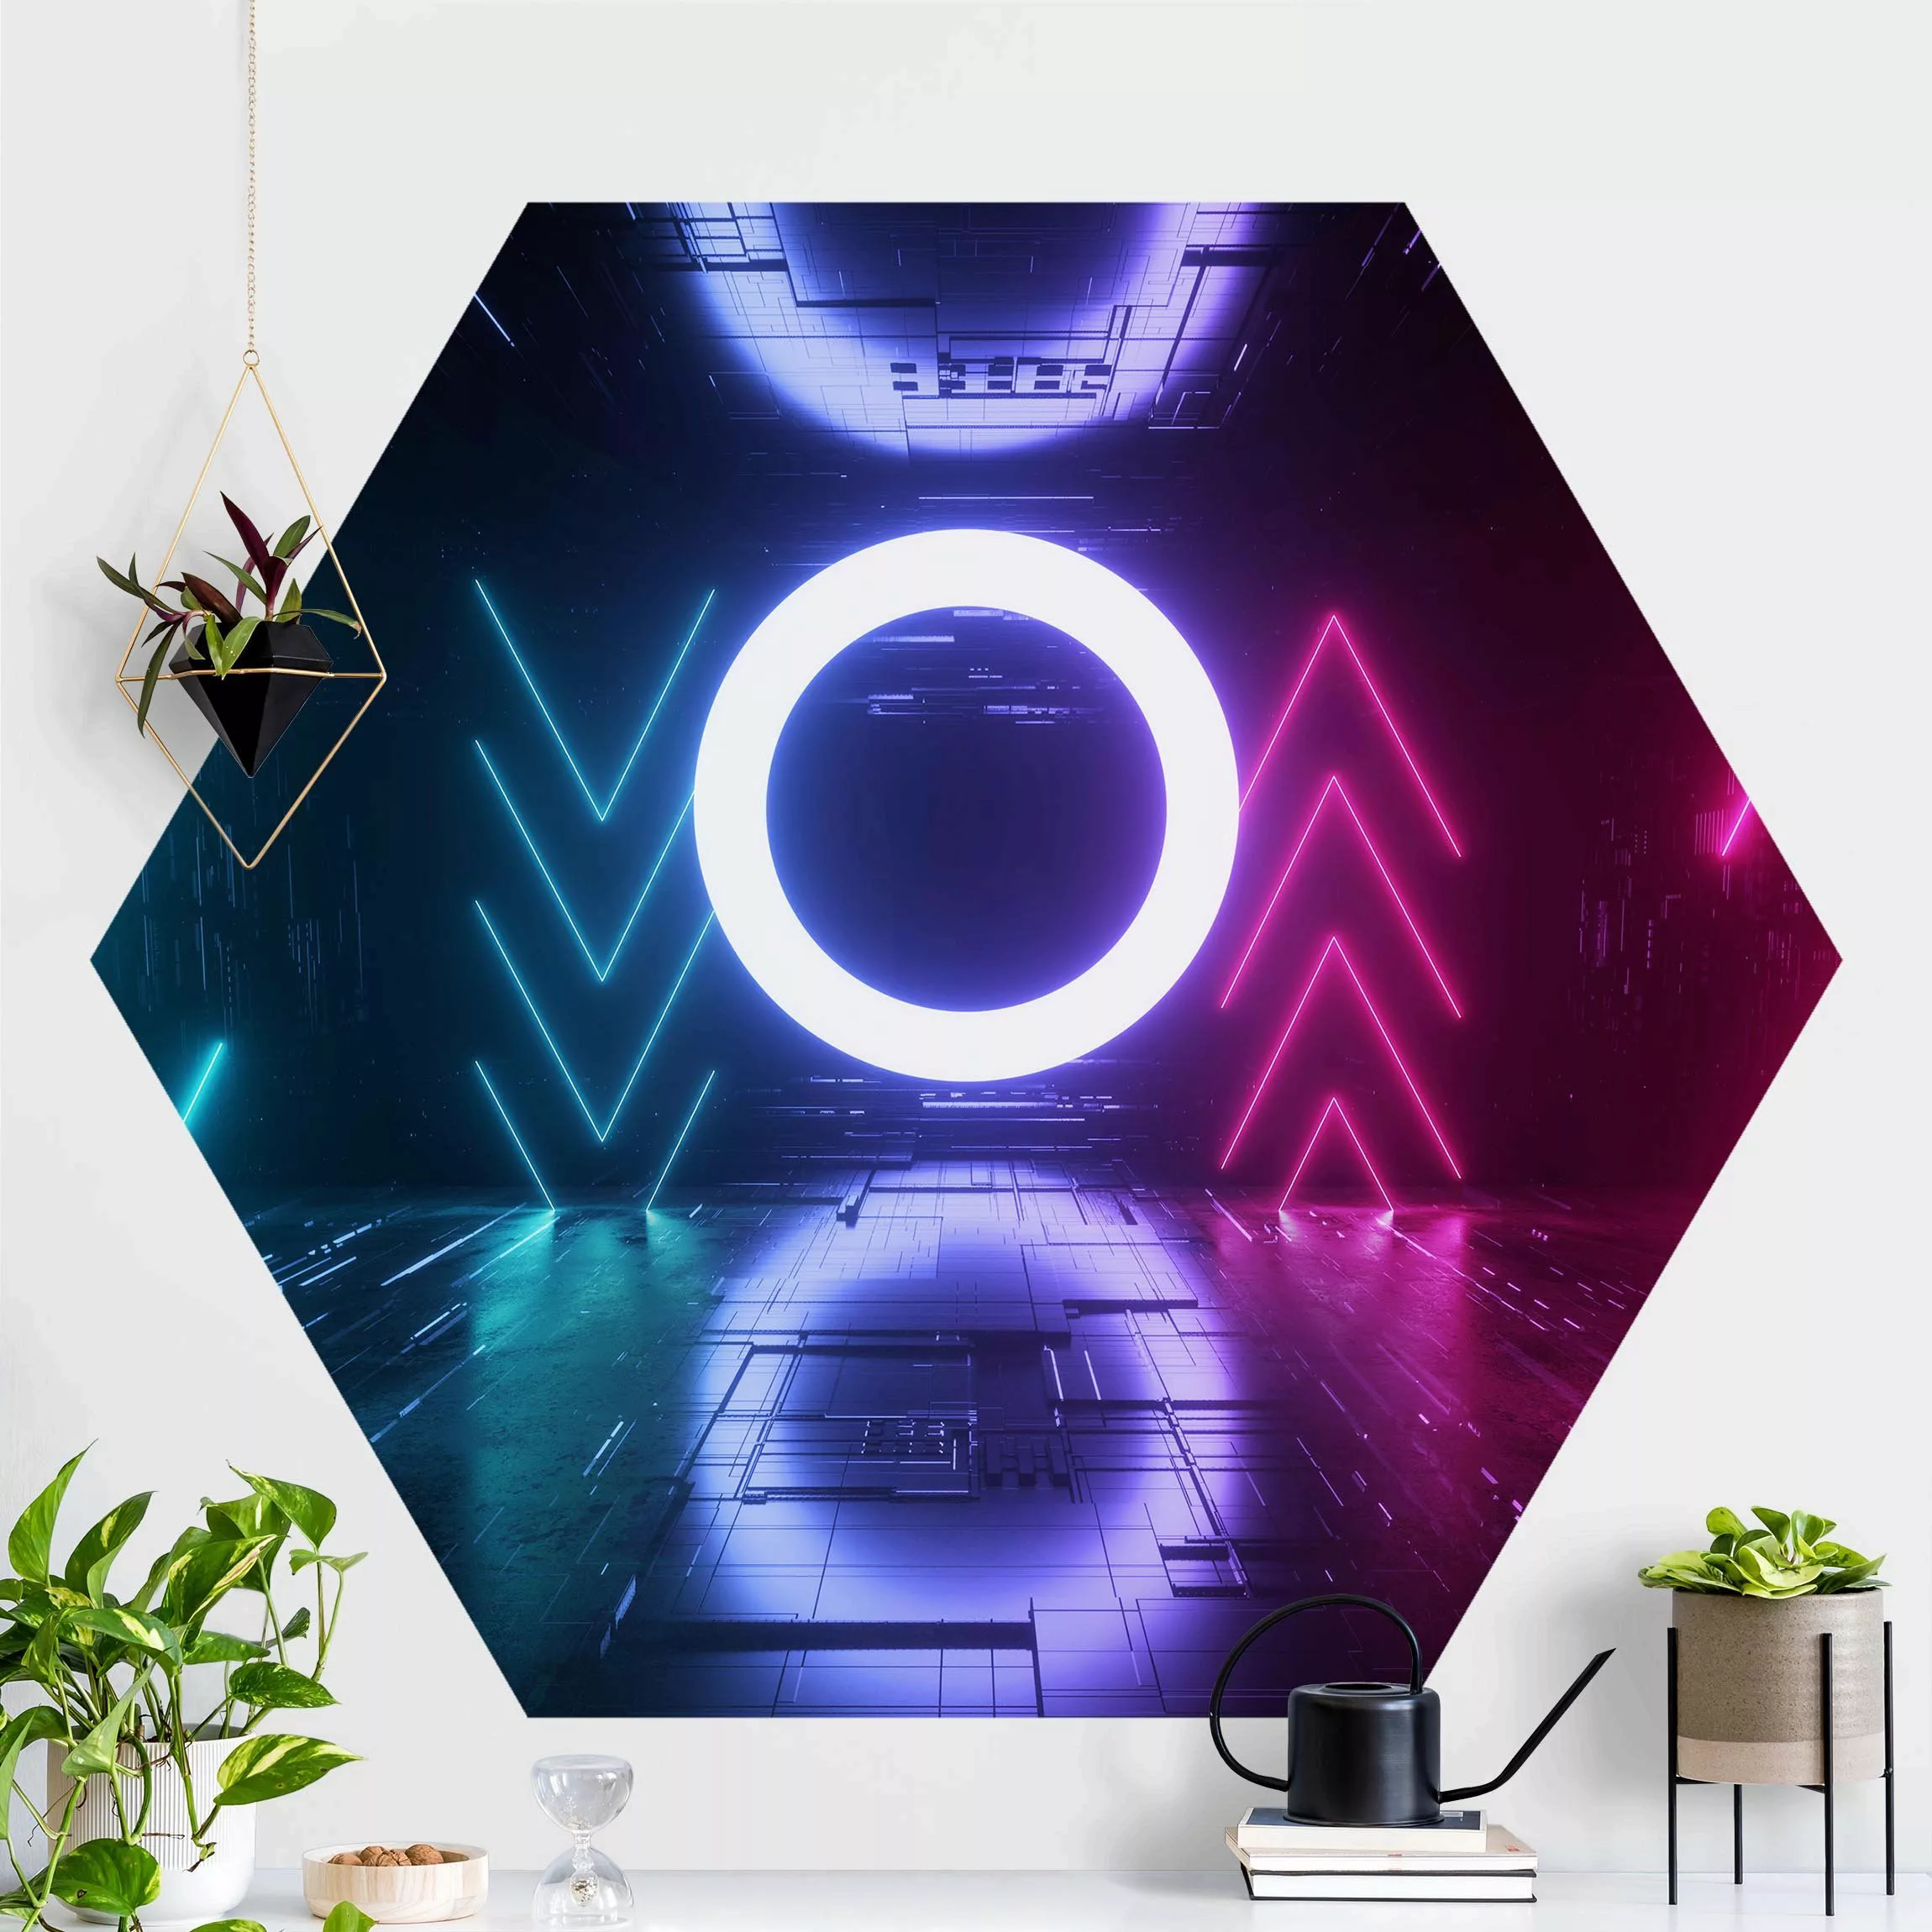 Hexagon Mustertapete selbstklebend Bunte Neonlichter günstig online kaufen